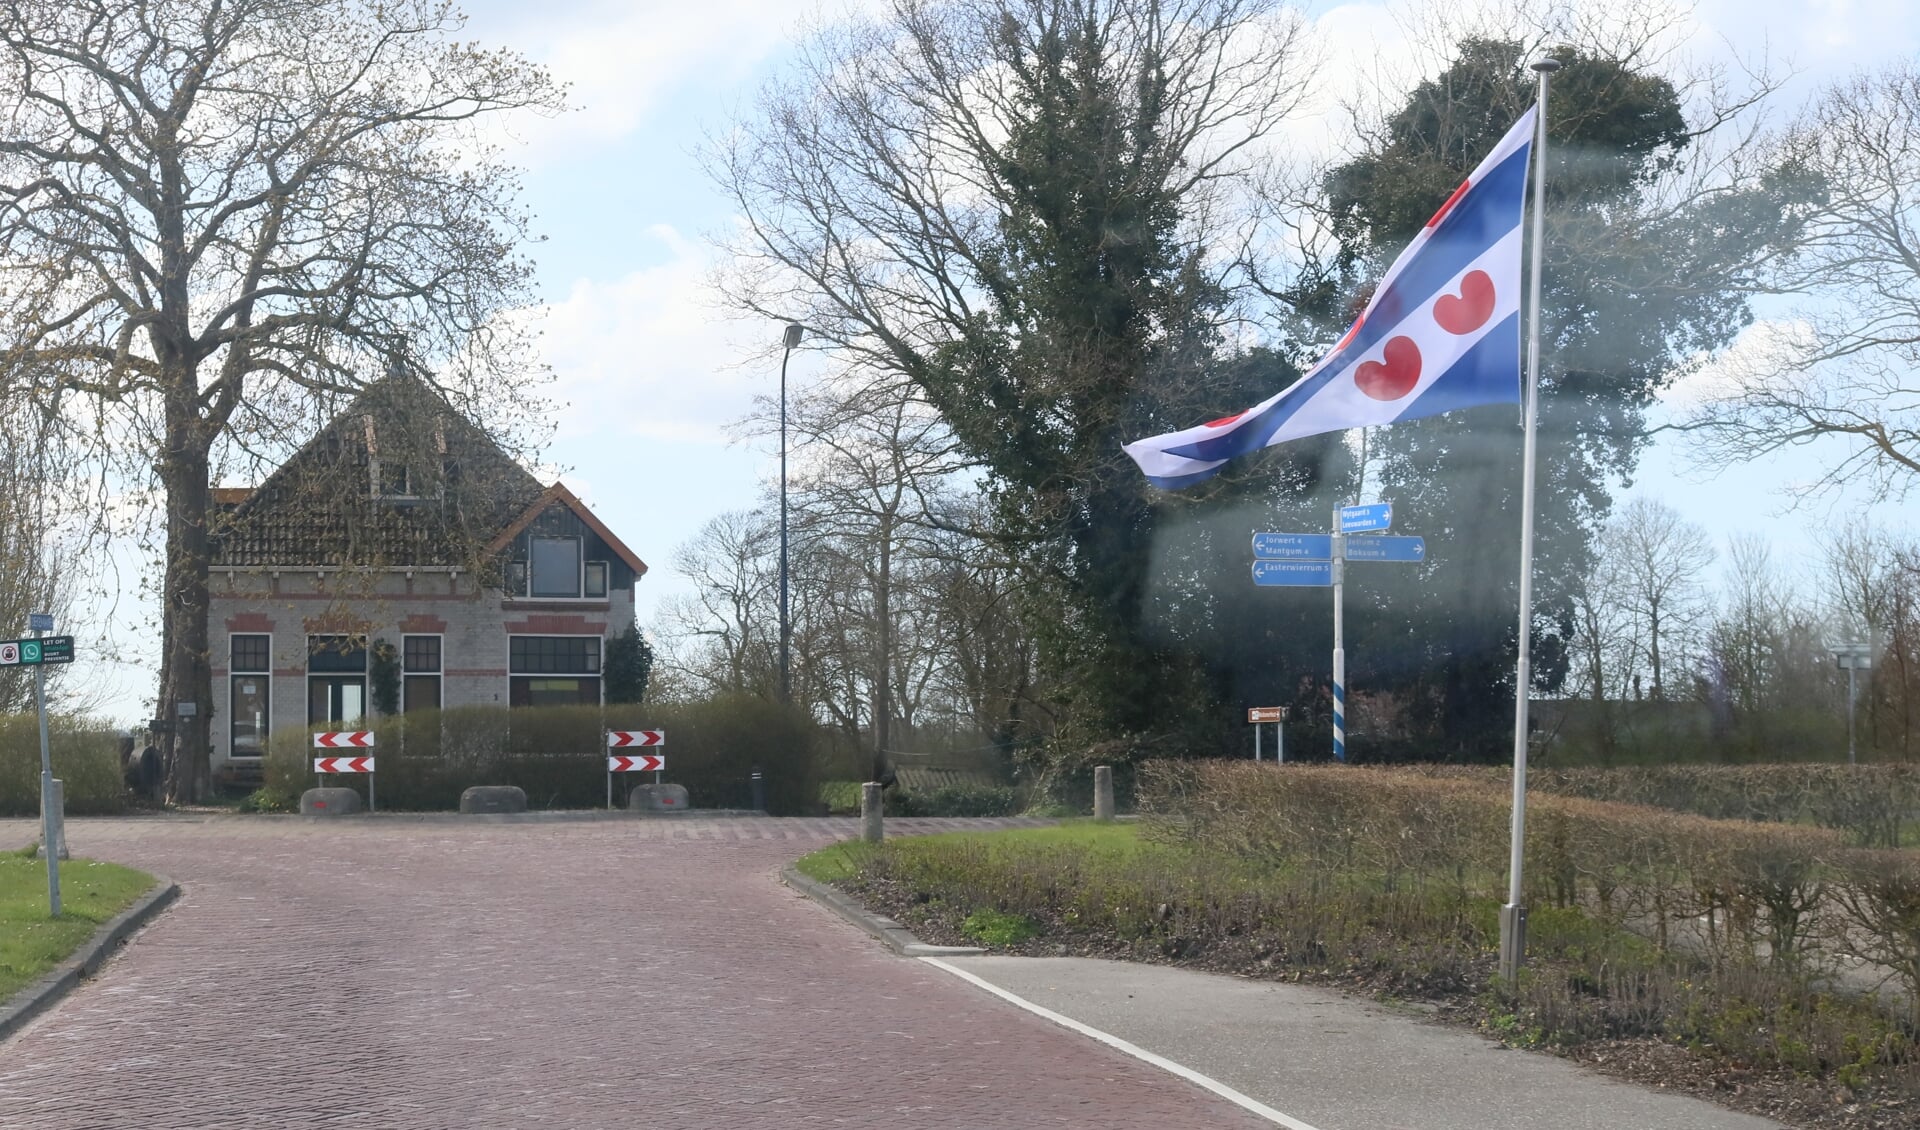 Deze Friese vlag markeerde bij Weidum de Friese bevrijdingsdag van WOII op 16 april. De vlag is ook het symbool van de Friese Nasjonale Partij (FNP). Die voelt zich buitenspel gezet bij het 'Deltaplan voor het Noorden'.